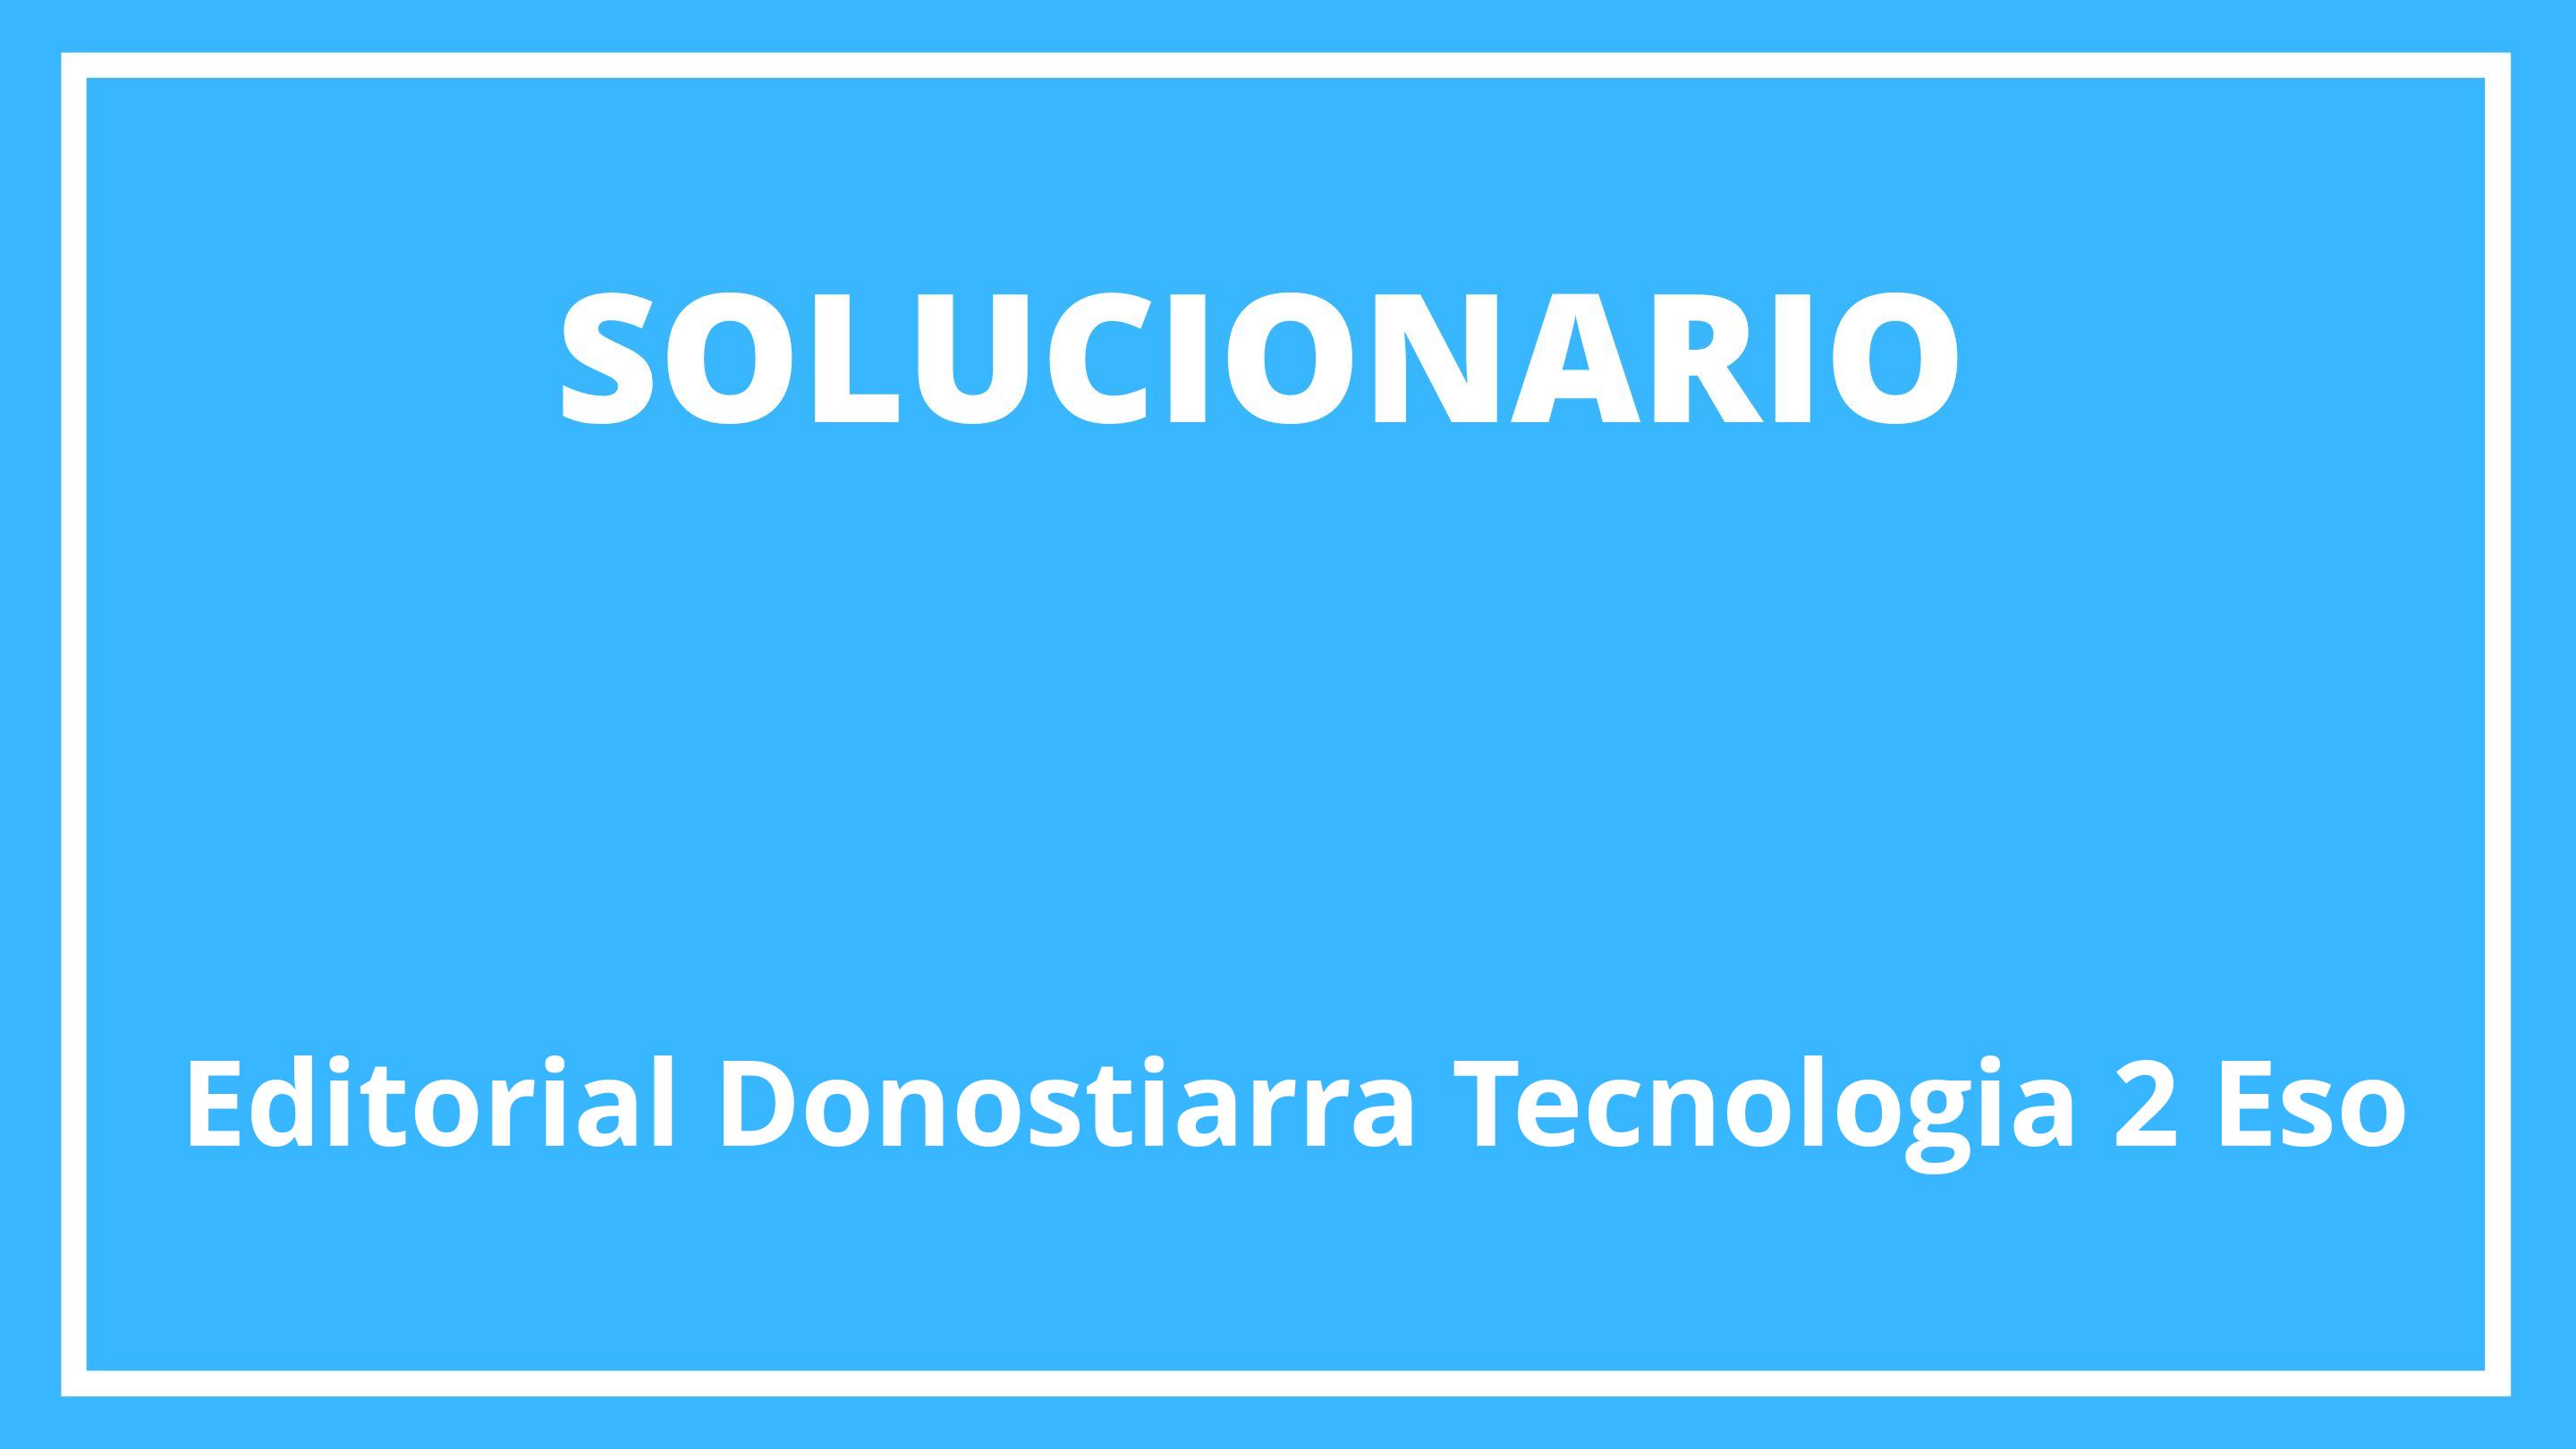 Editorial Donostiarra Tecnología 2 Eso Solucionario